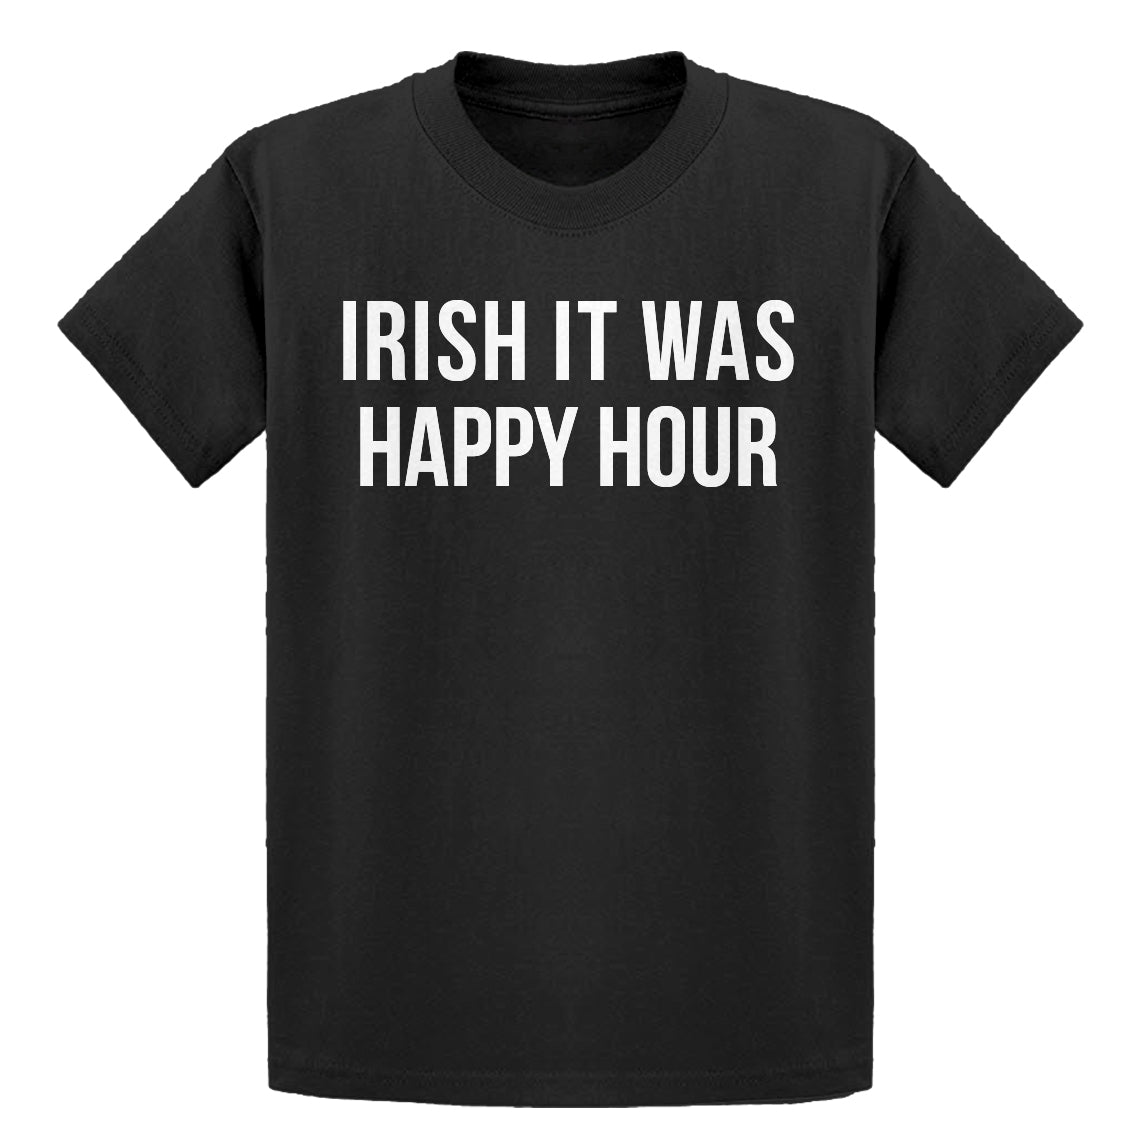 Youth Irish it were Happy Hour Kids T-shirt